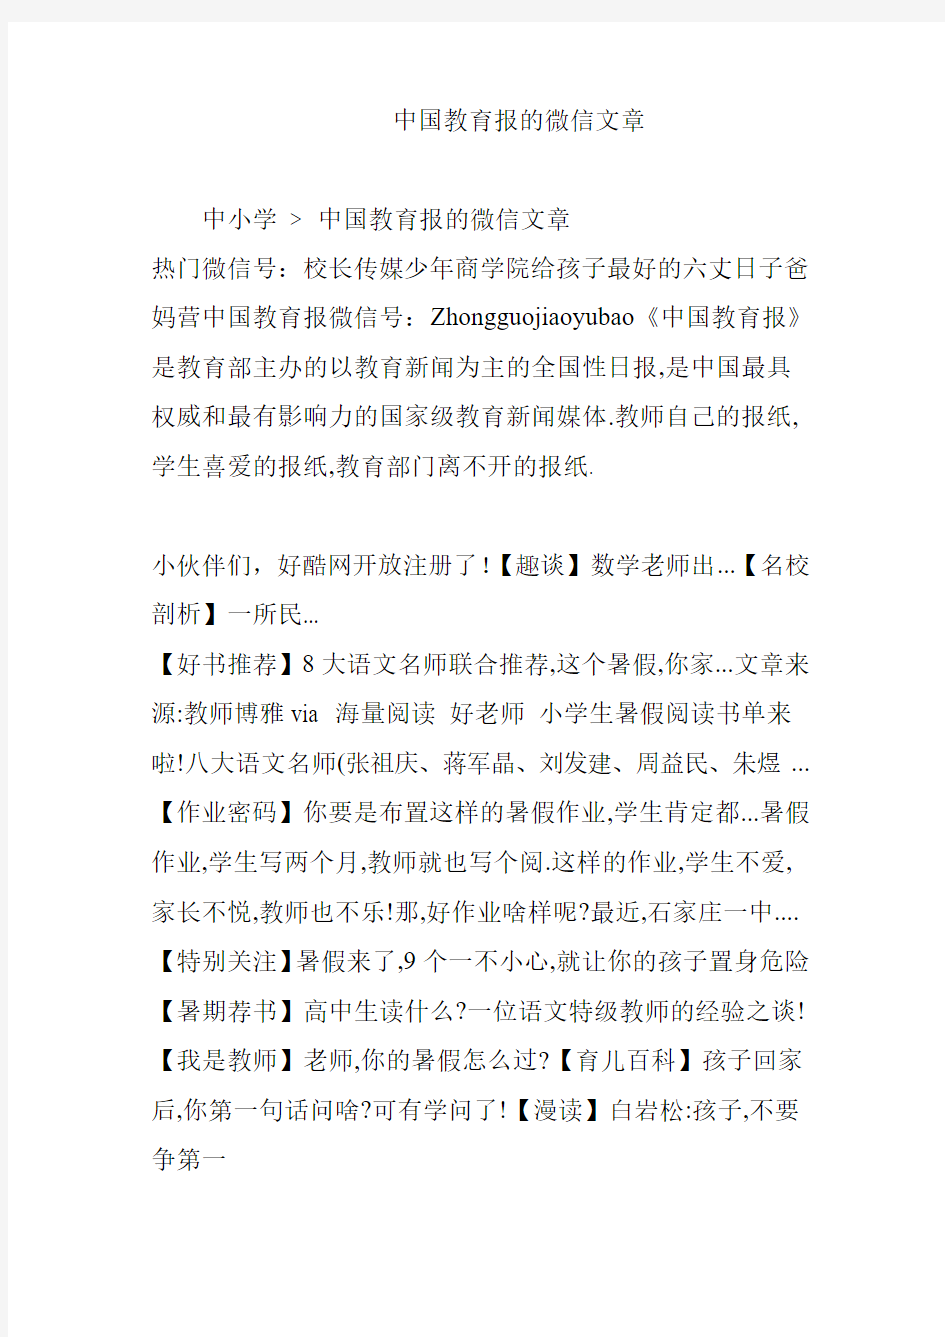 中国教育报的微信文章